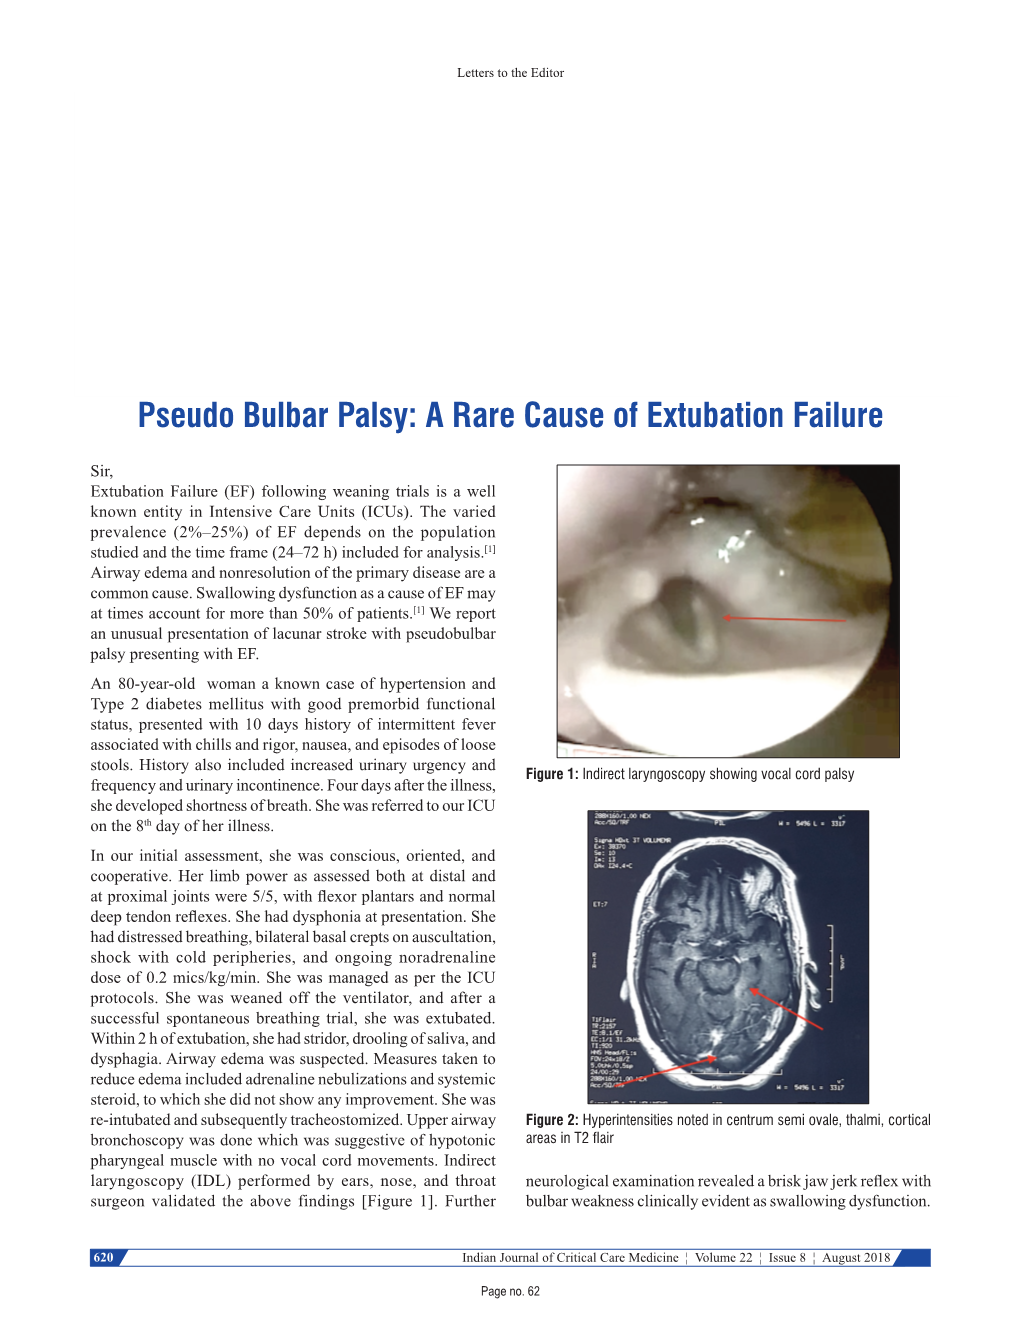 Pseudo Bulbar Palsy: a Rare Cause of Extubation Failure